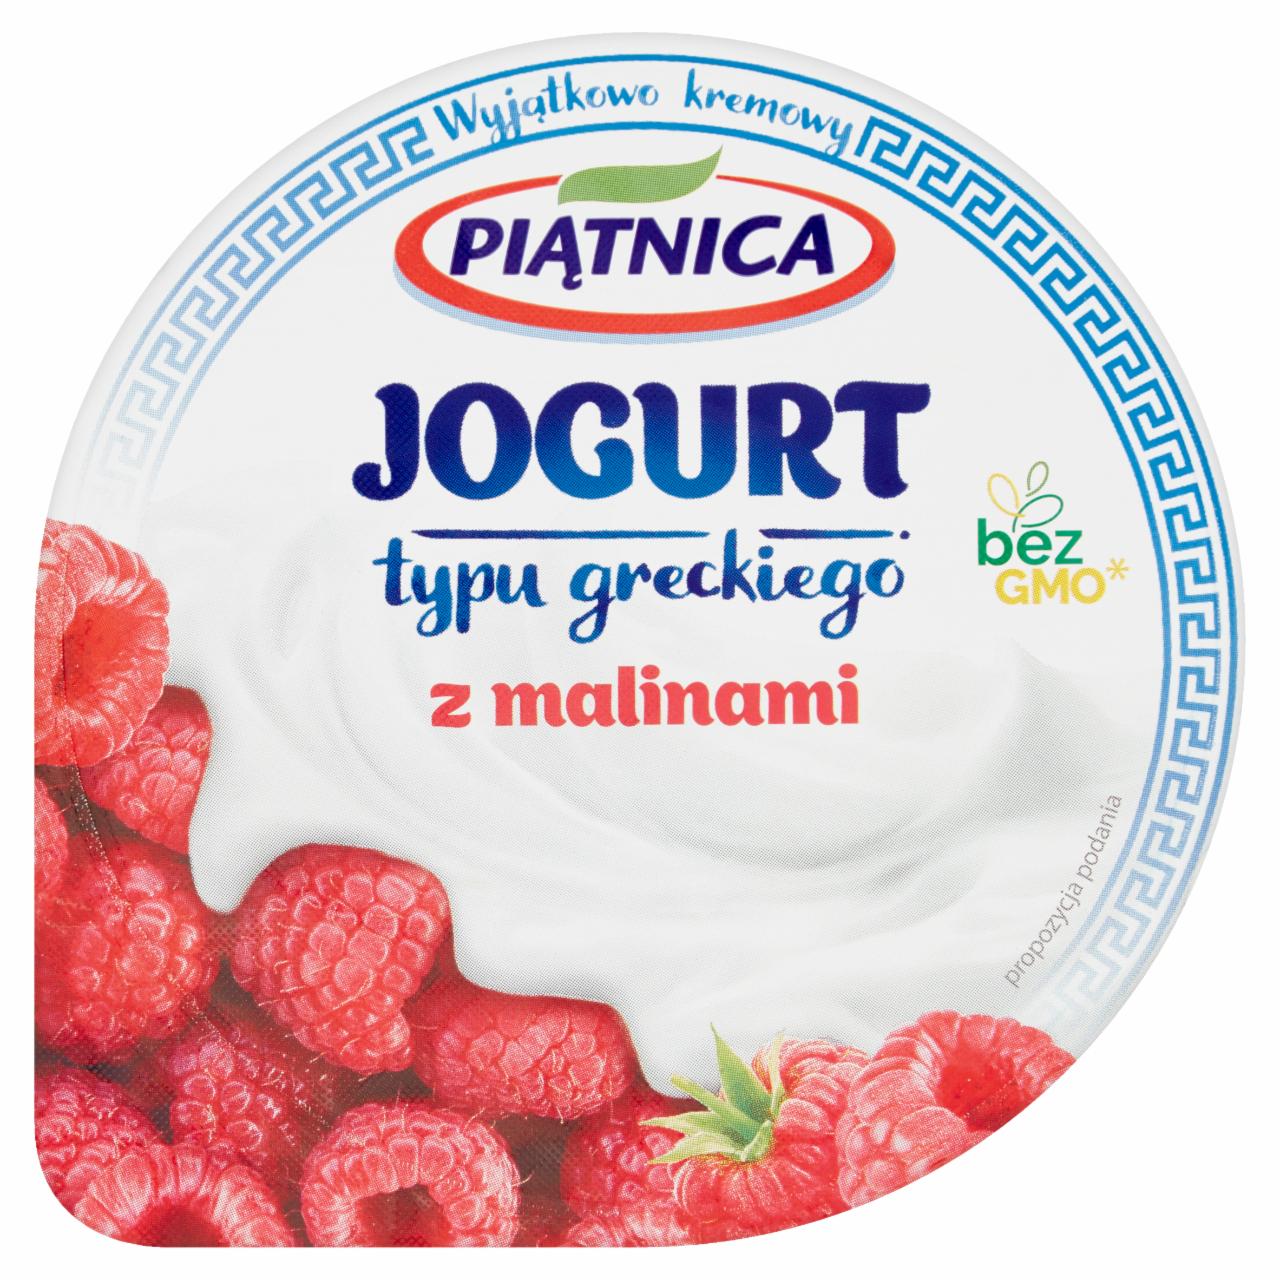 Zdjęcia - Jogurt typu greckiego z malinami 4% Piątnica